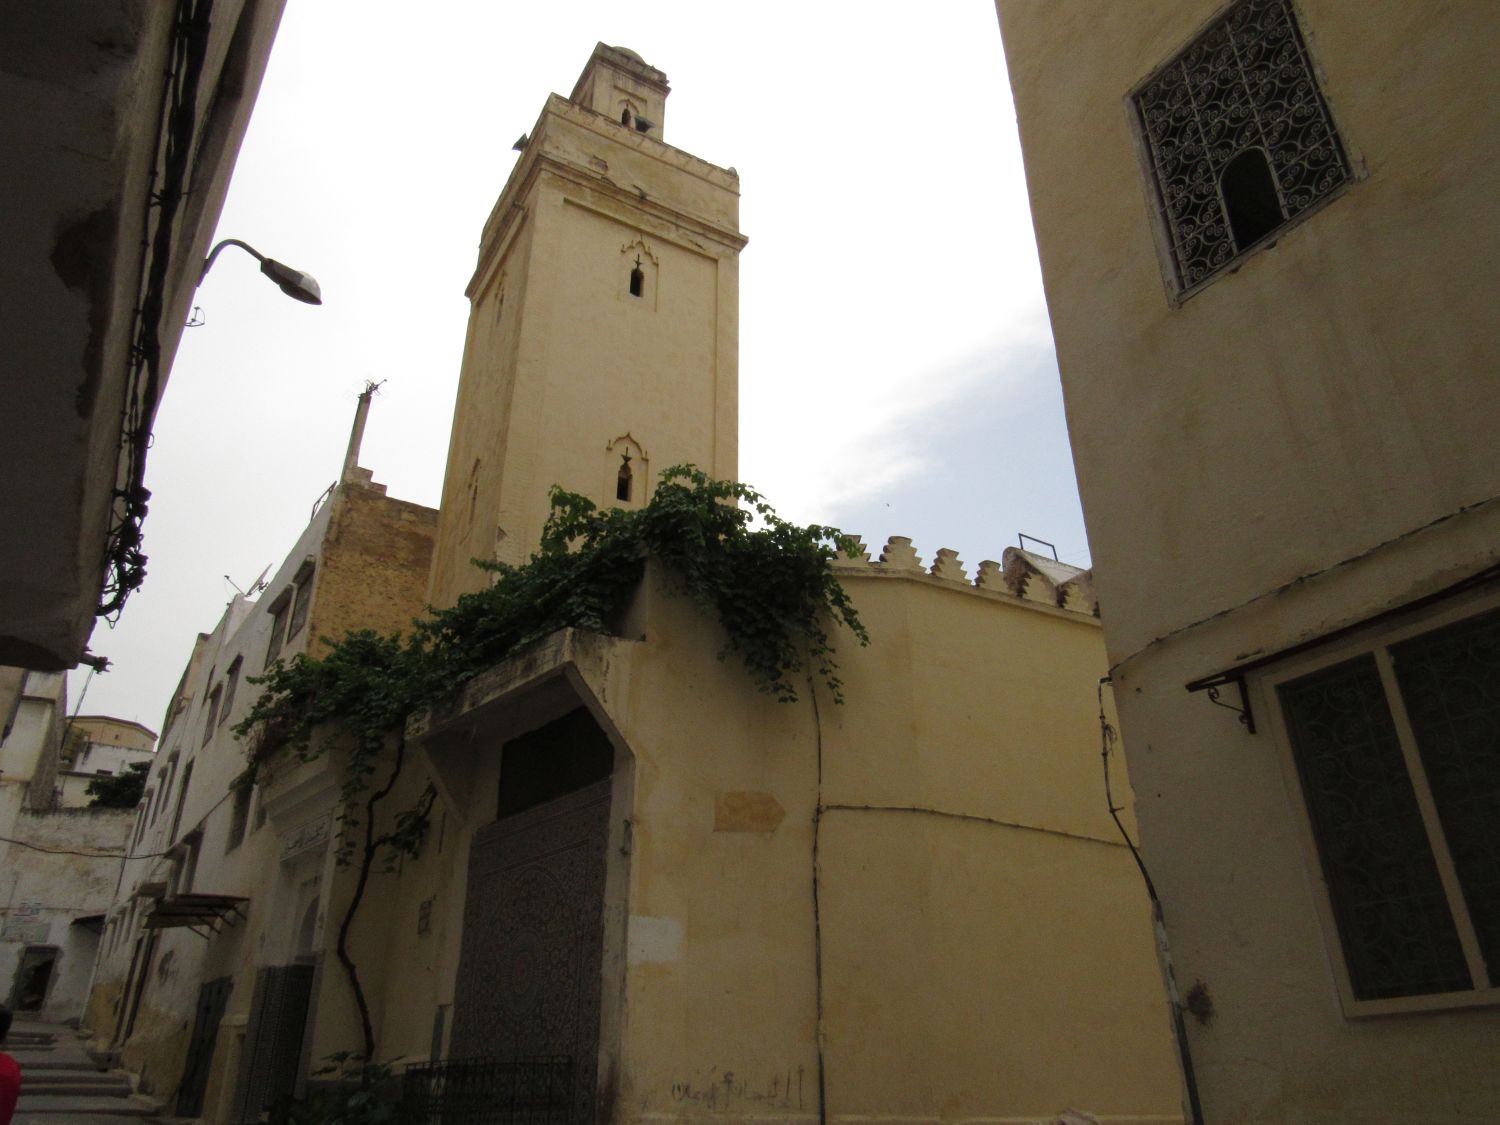 Exterior view, mosque exterior and minaret.